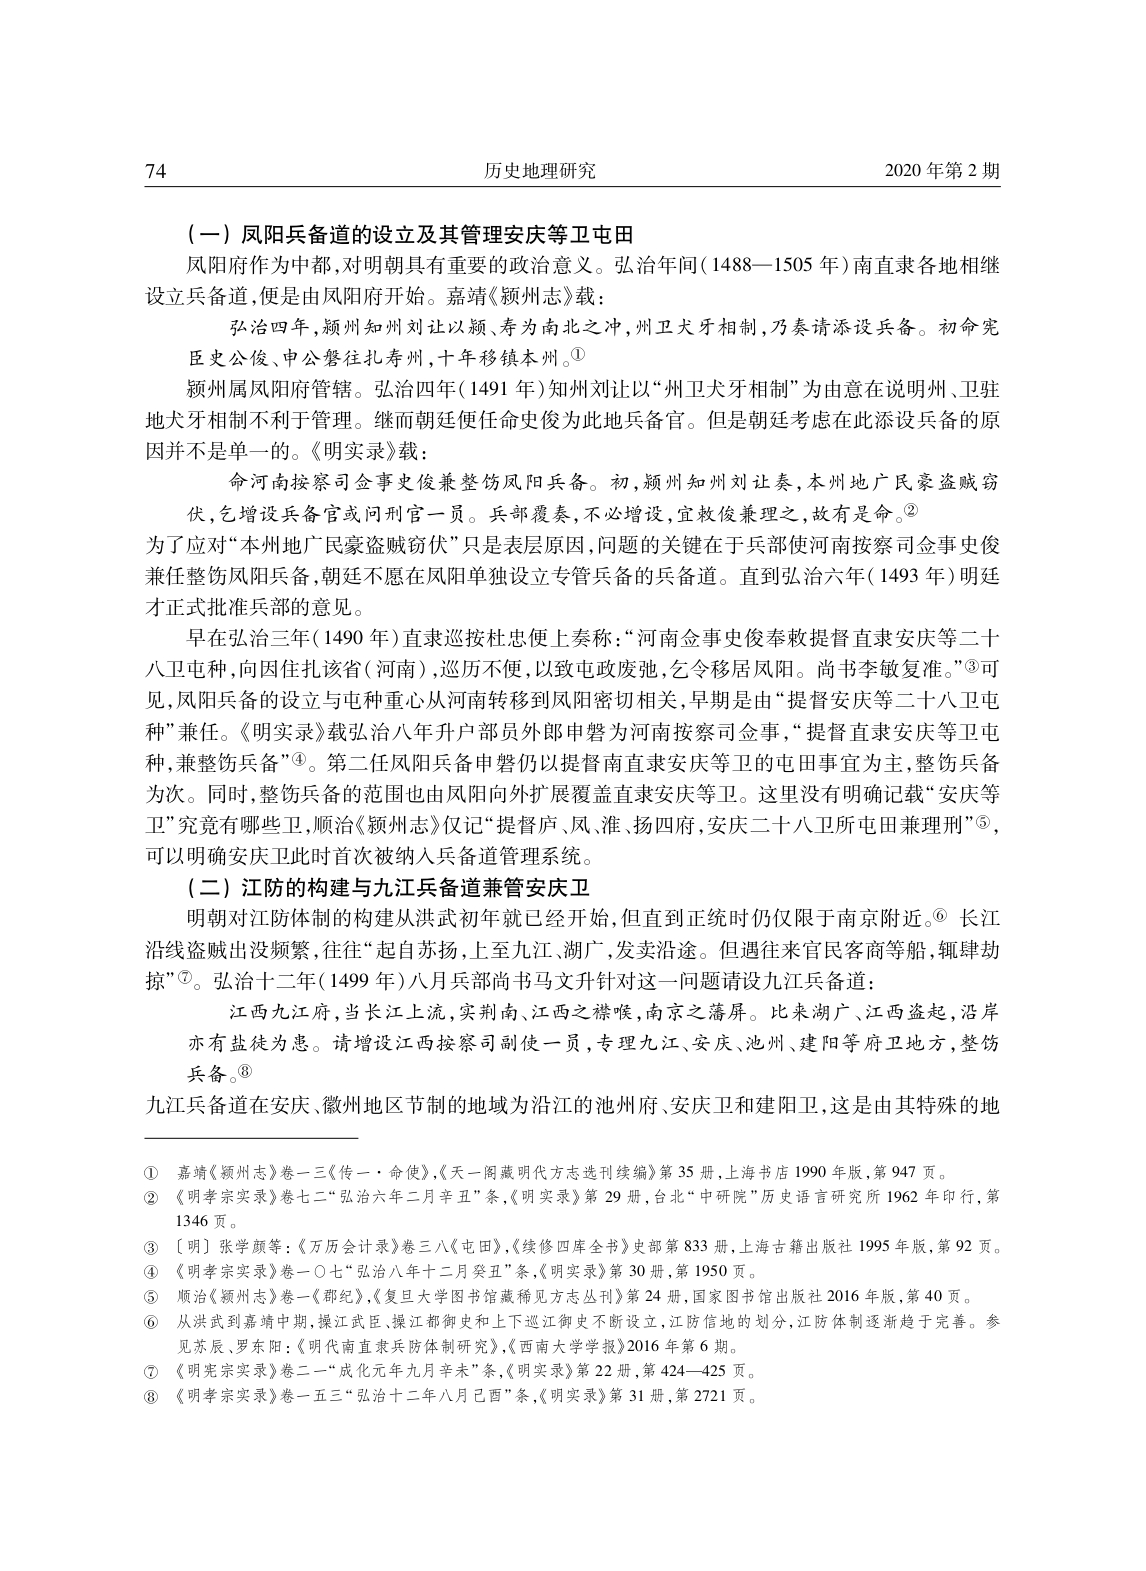 明代安庆、徽州地区兵备道分合演变考论_page-0003.jpg